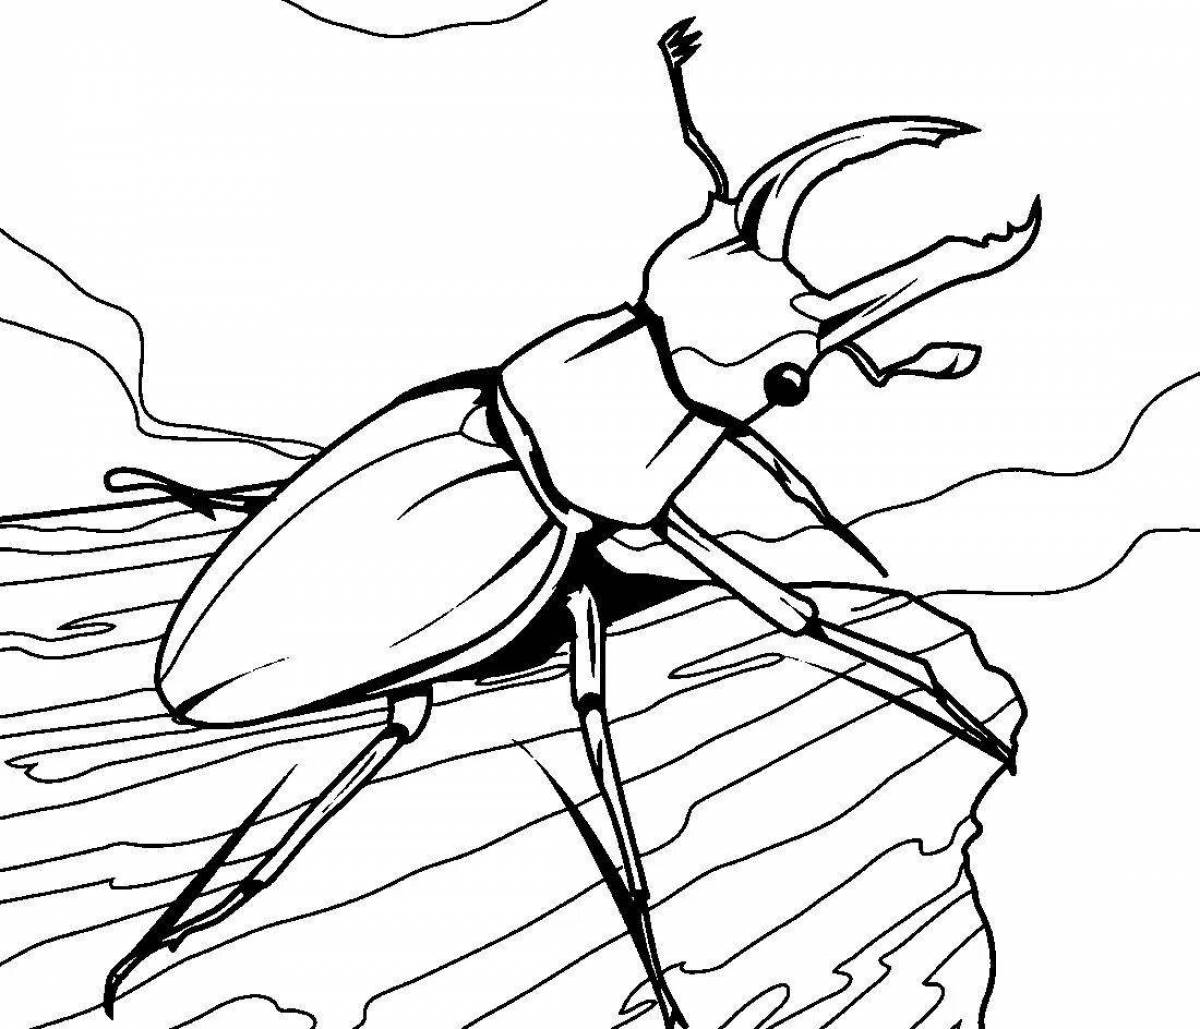 Bugs #1